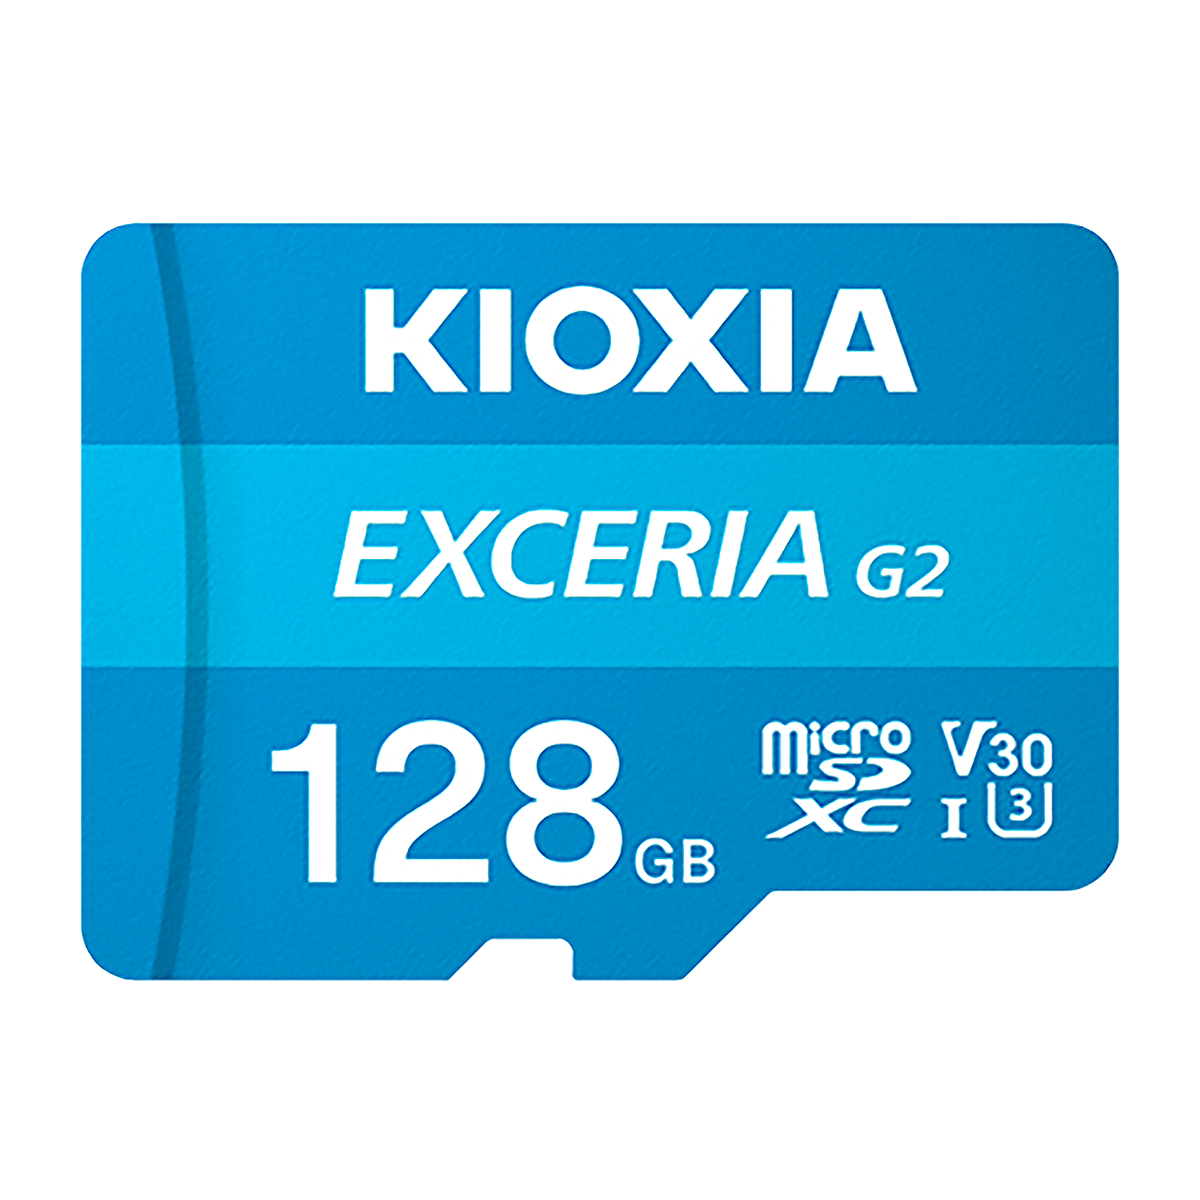 کارت حافظه microSDXC کیوکسیا مدل EXCERIA G2 کلاس 10 استاندارد UHS-I سرعت 100MBps ظرفیت 128 گیگابایت-small-image